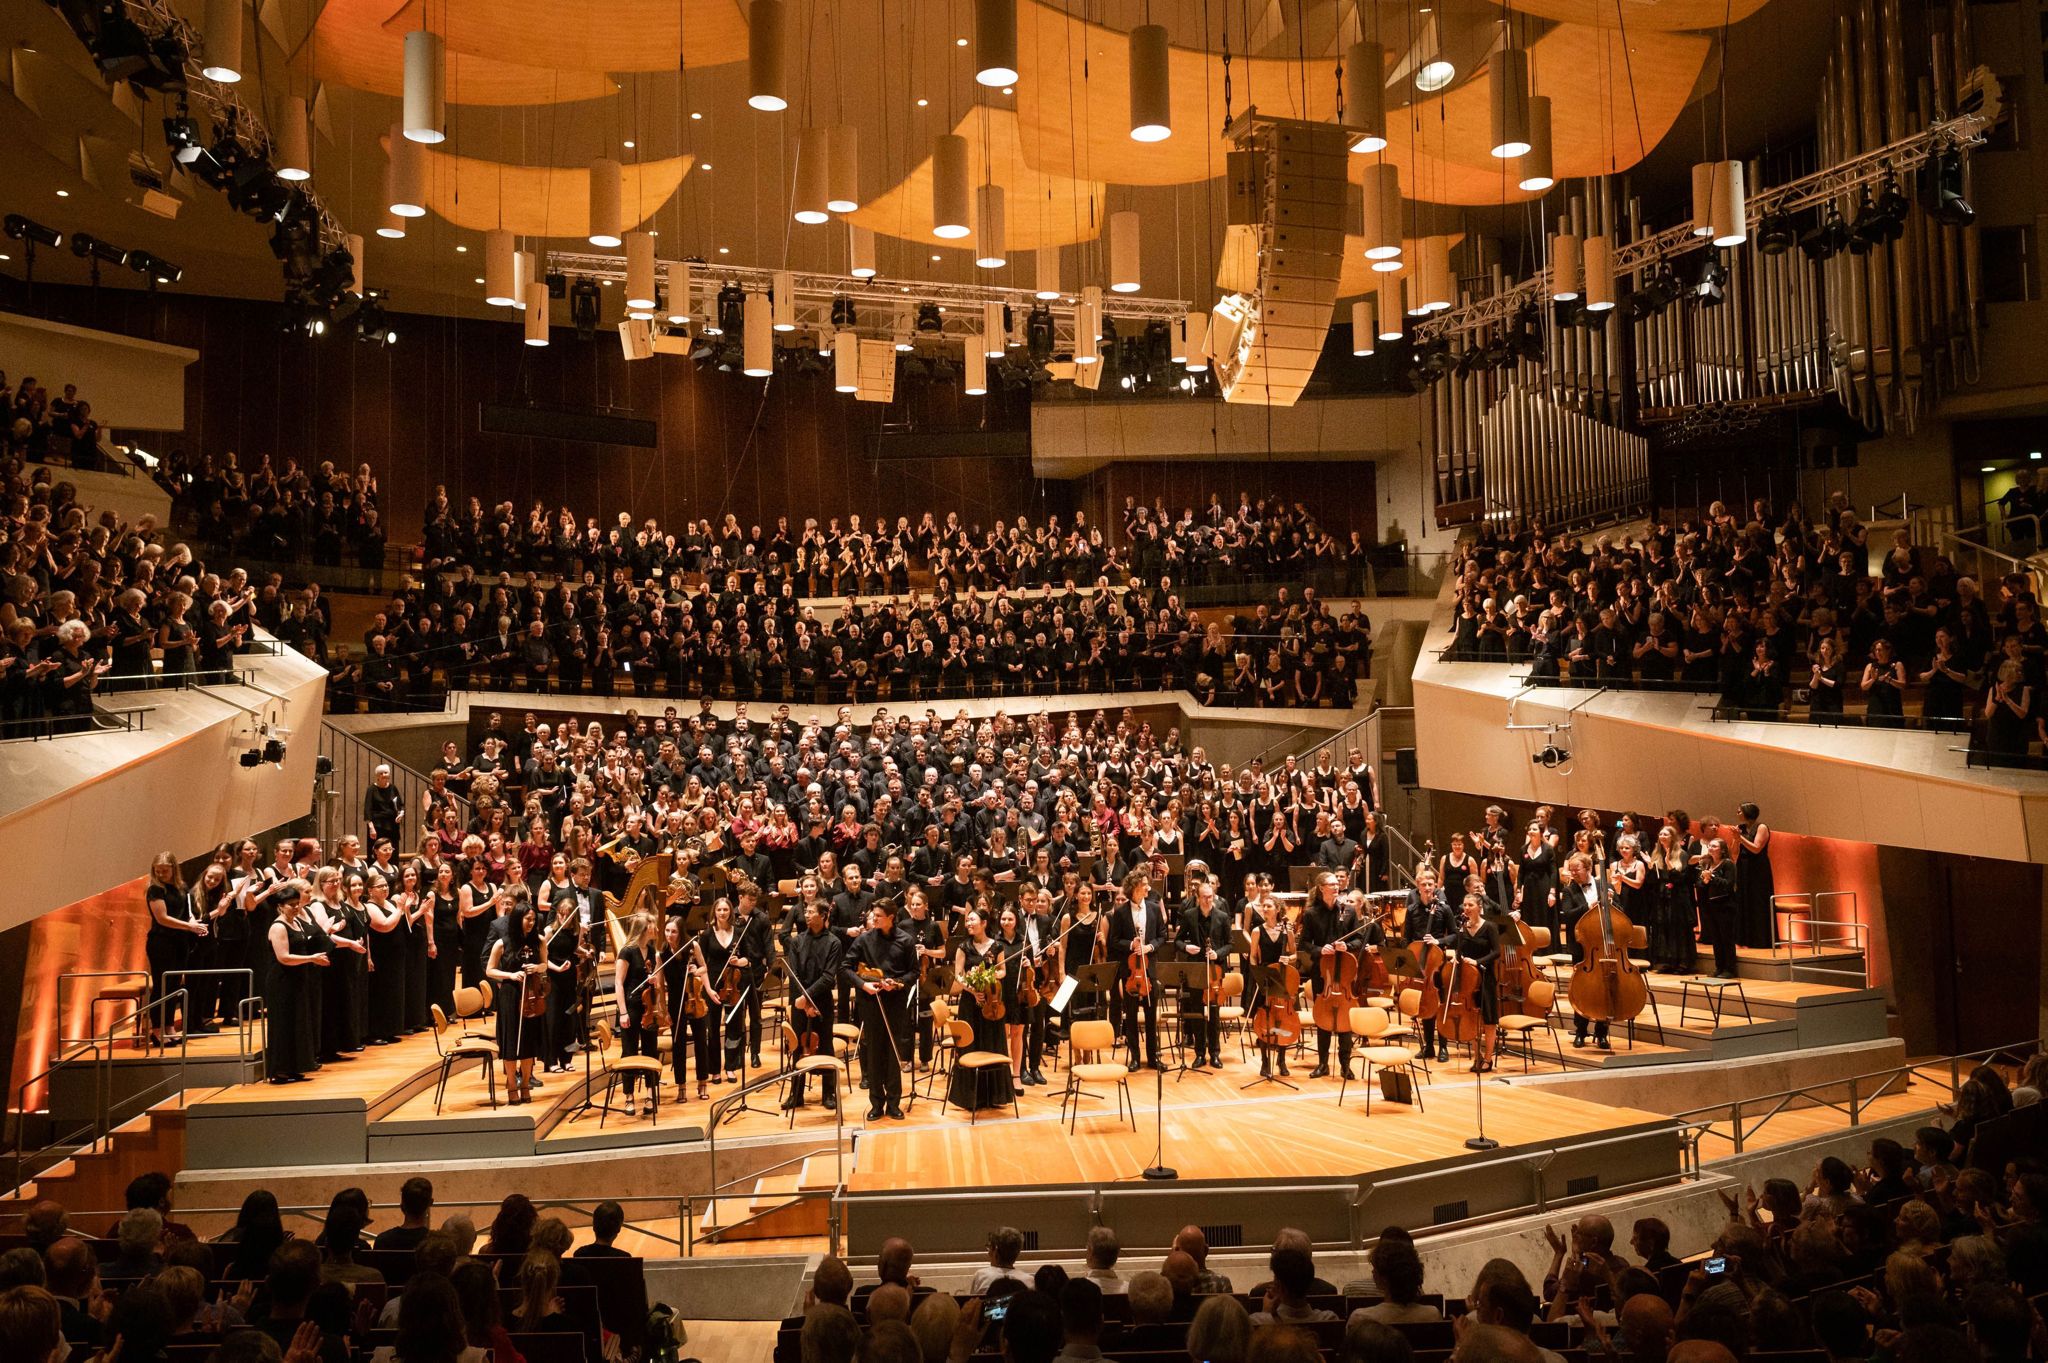 Successo di due cori veronesi nella famosa sala Philharmonie di Berlino